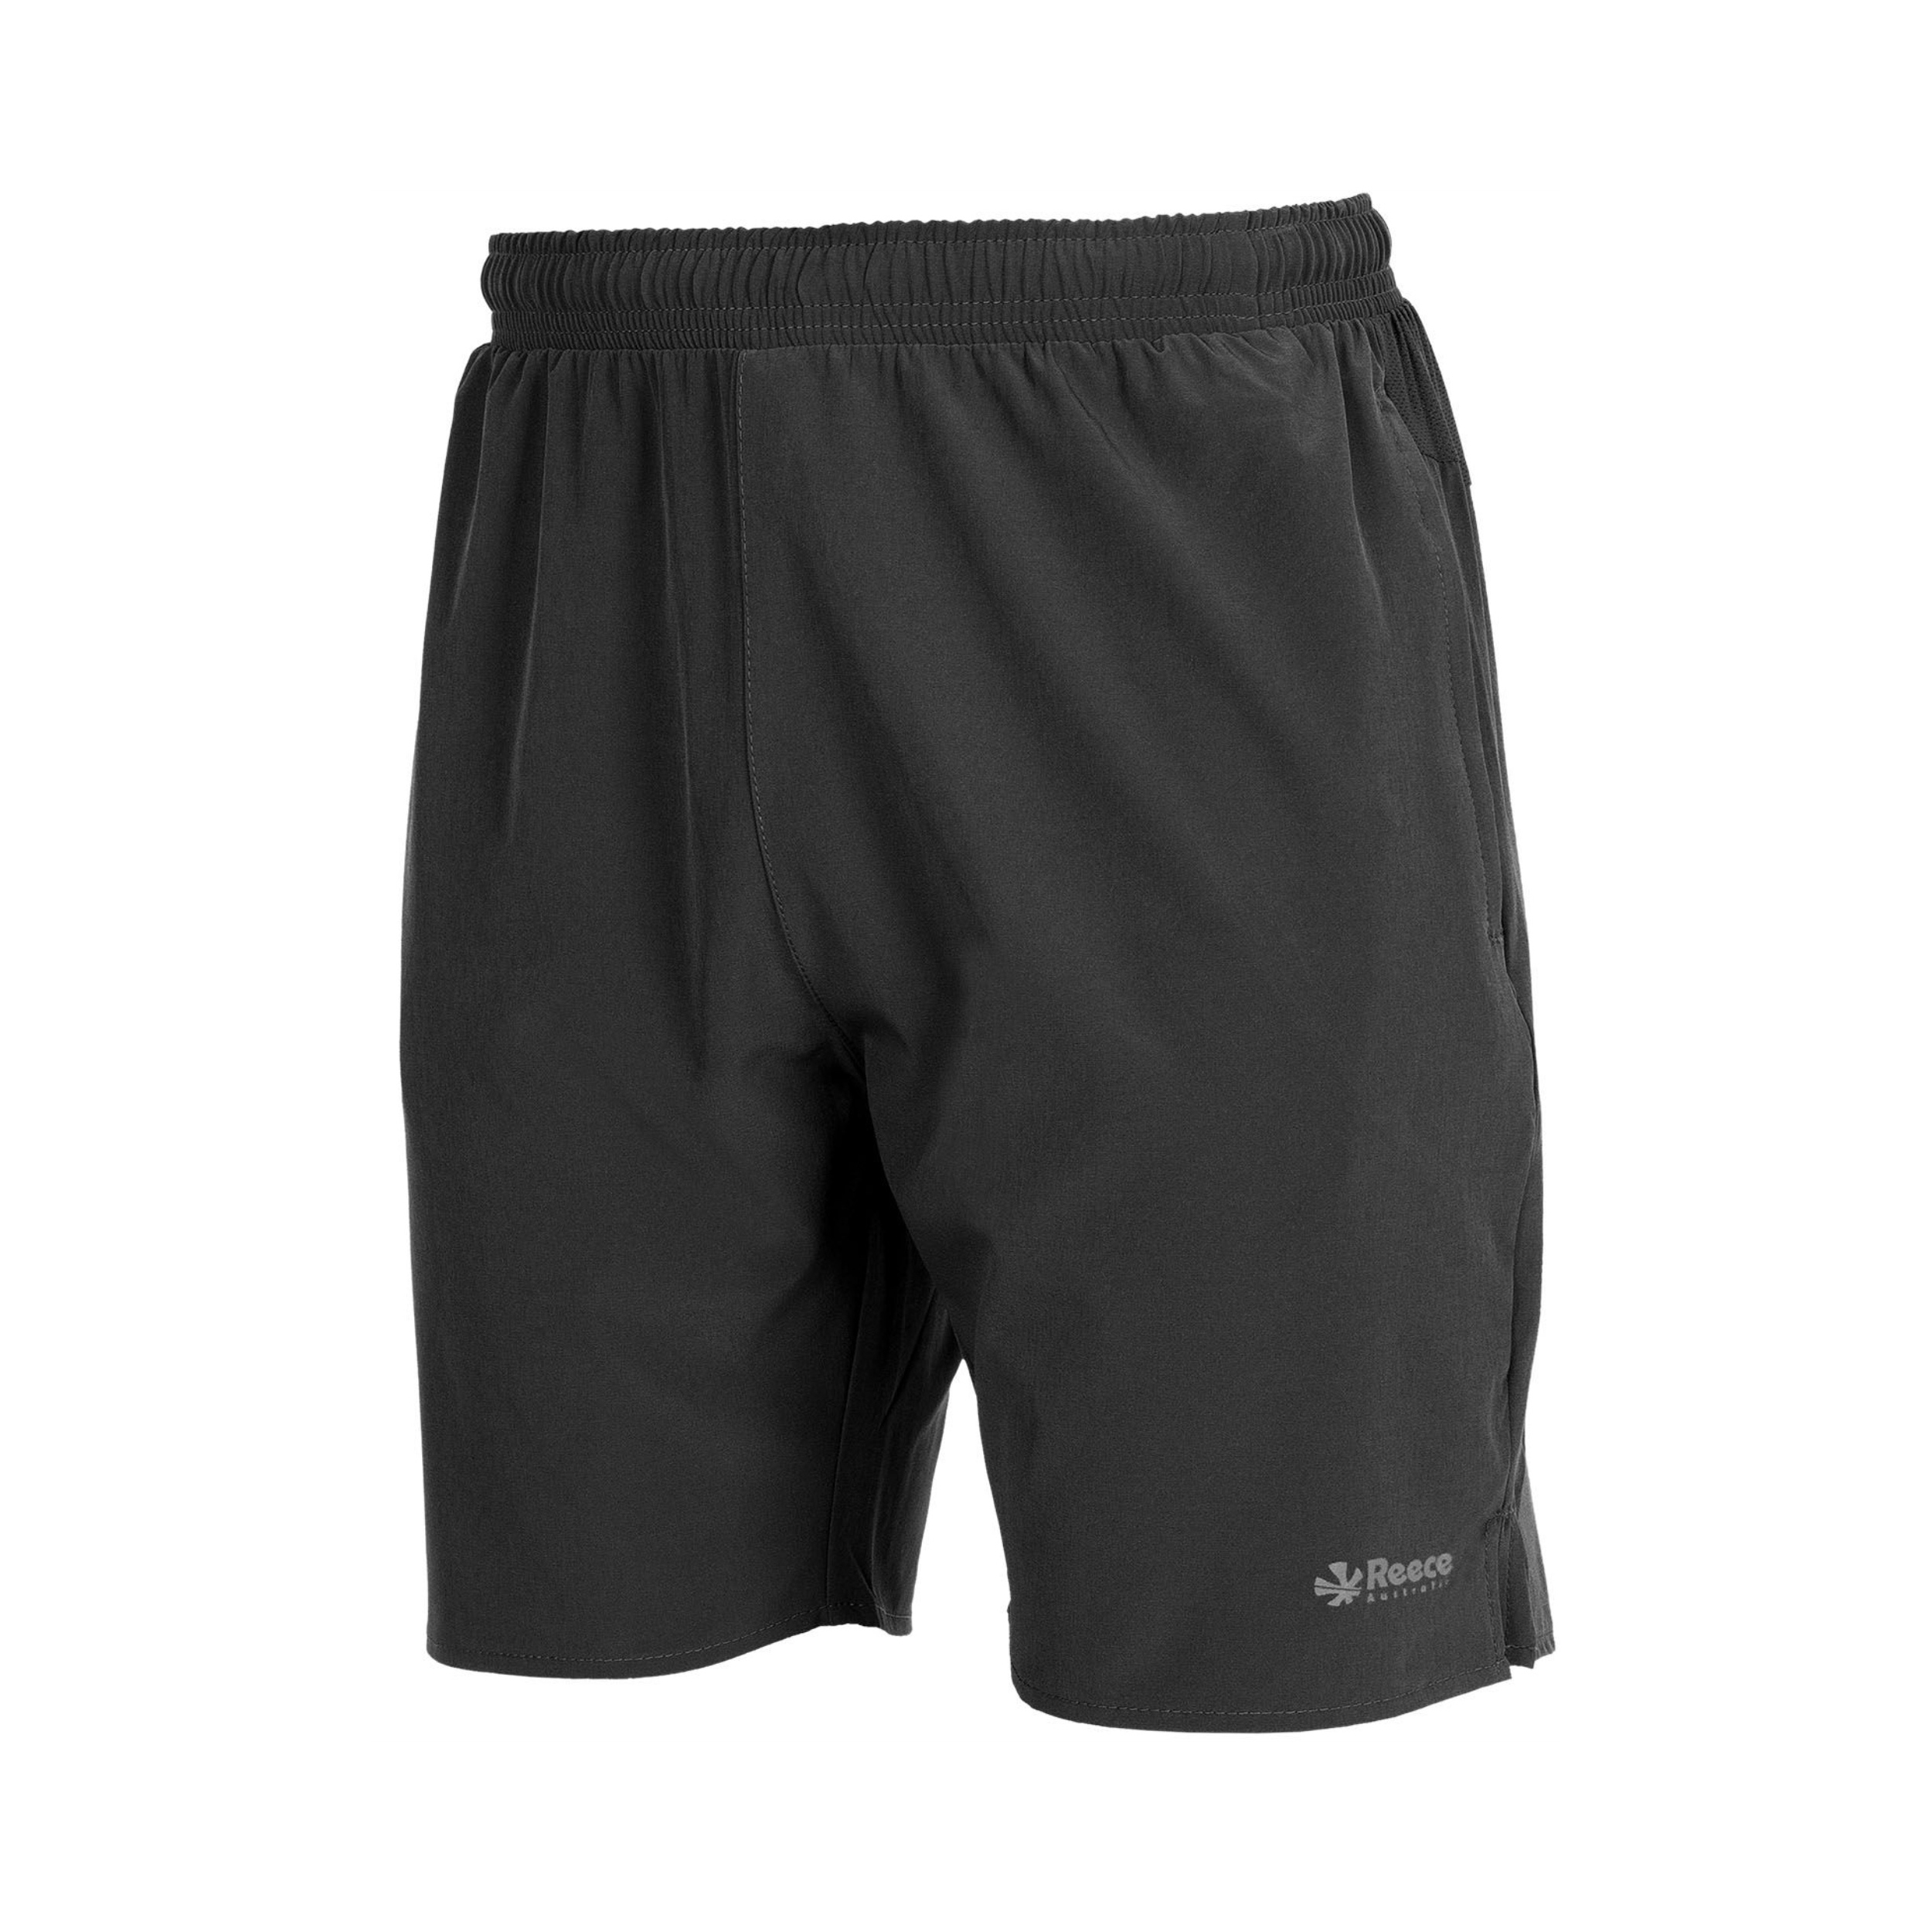 RWTP shorts